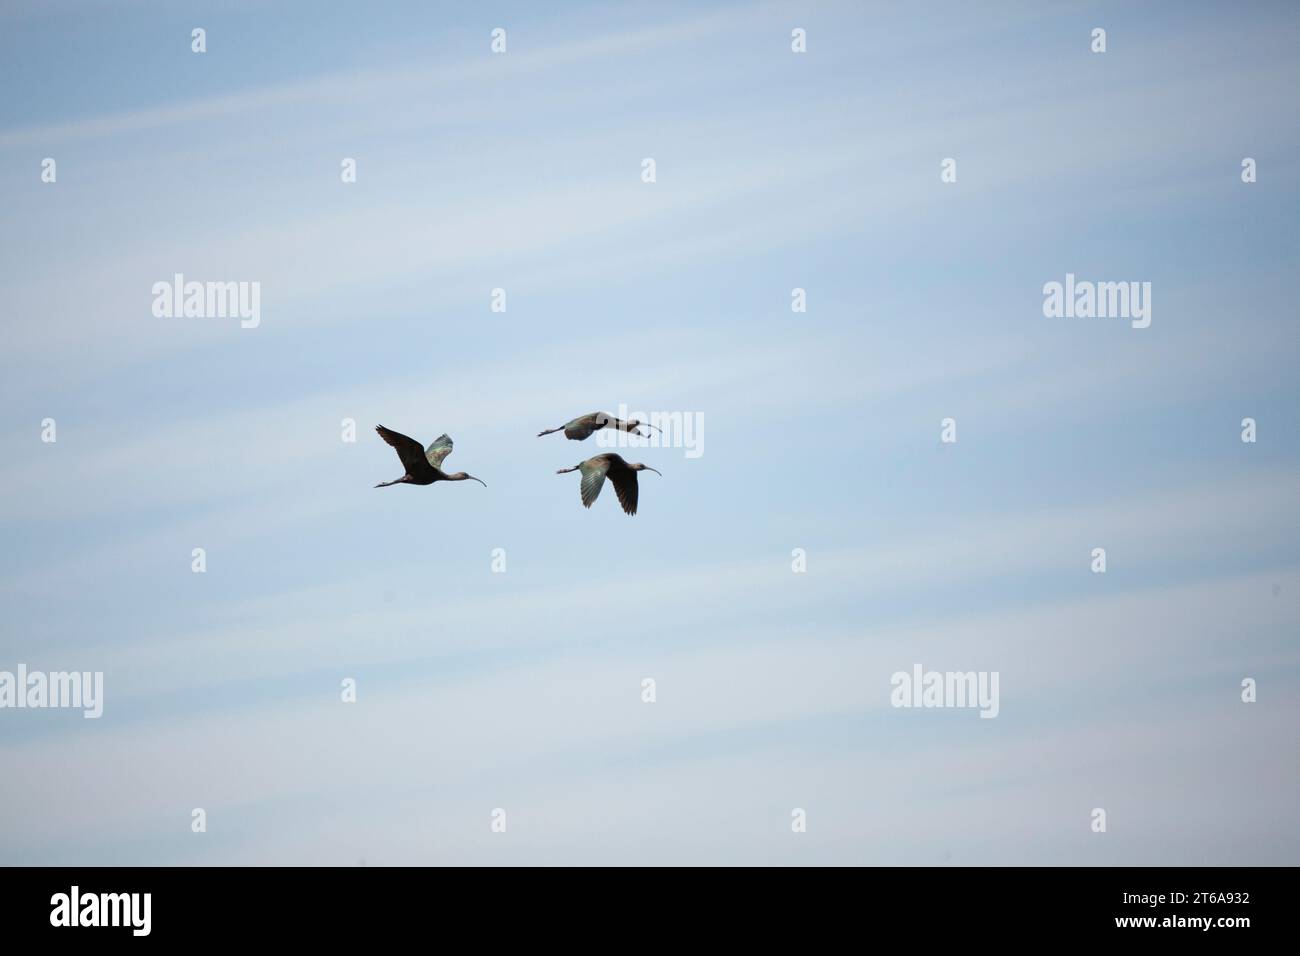 Tre ibi dalla faccia bianca (Plegadis chihi) che volano a destra attraverso un cielo nuvoloso; spazio di copia in alto, in basso e a destra Foto Stock